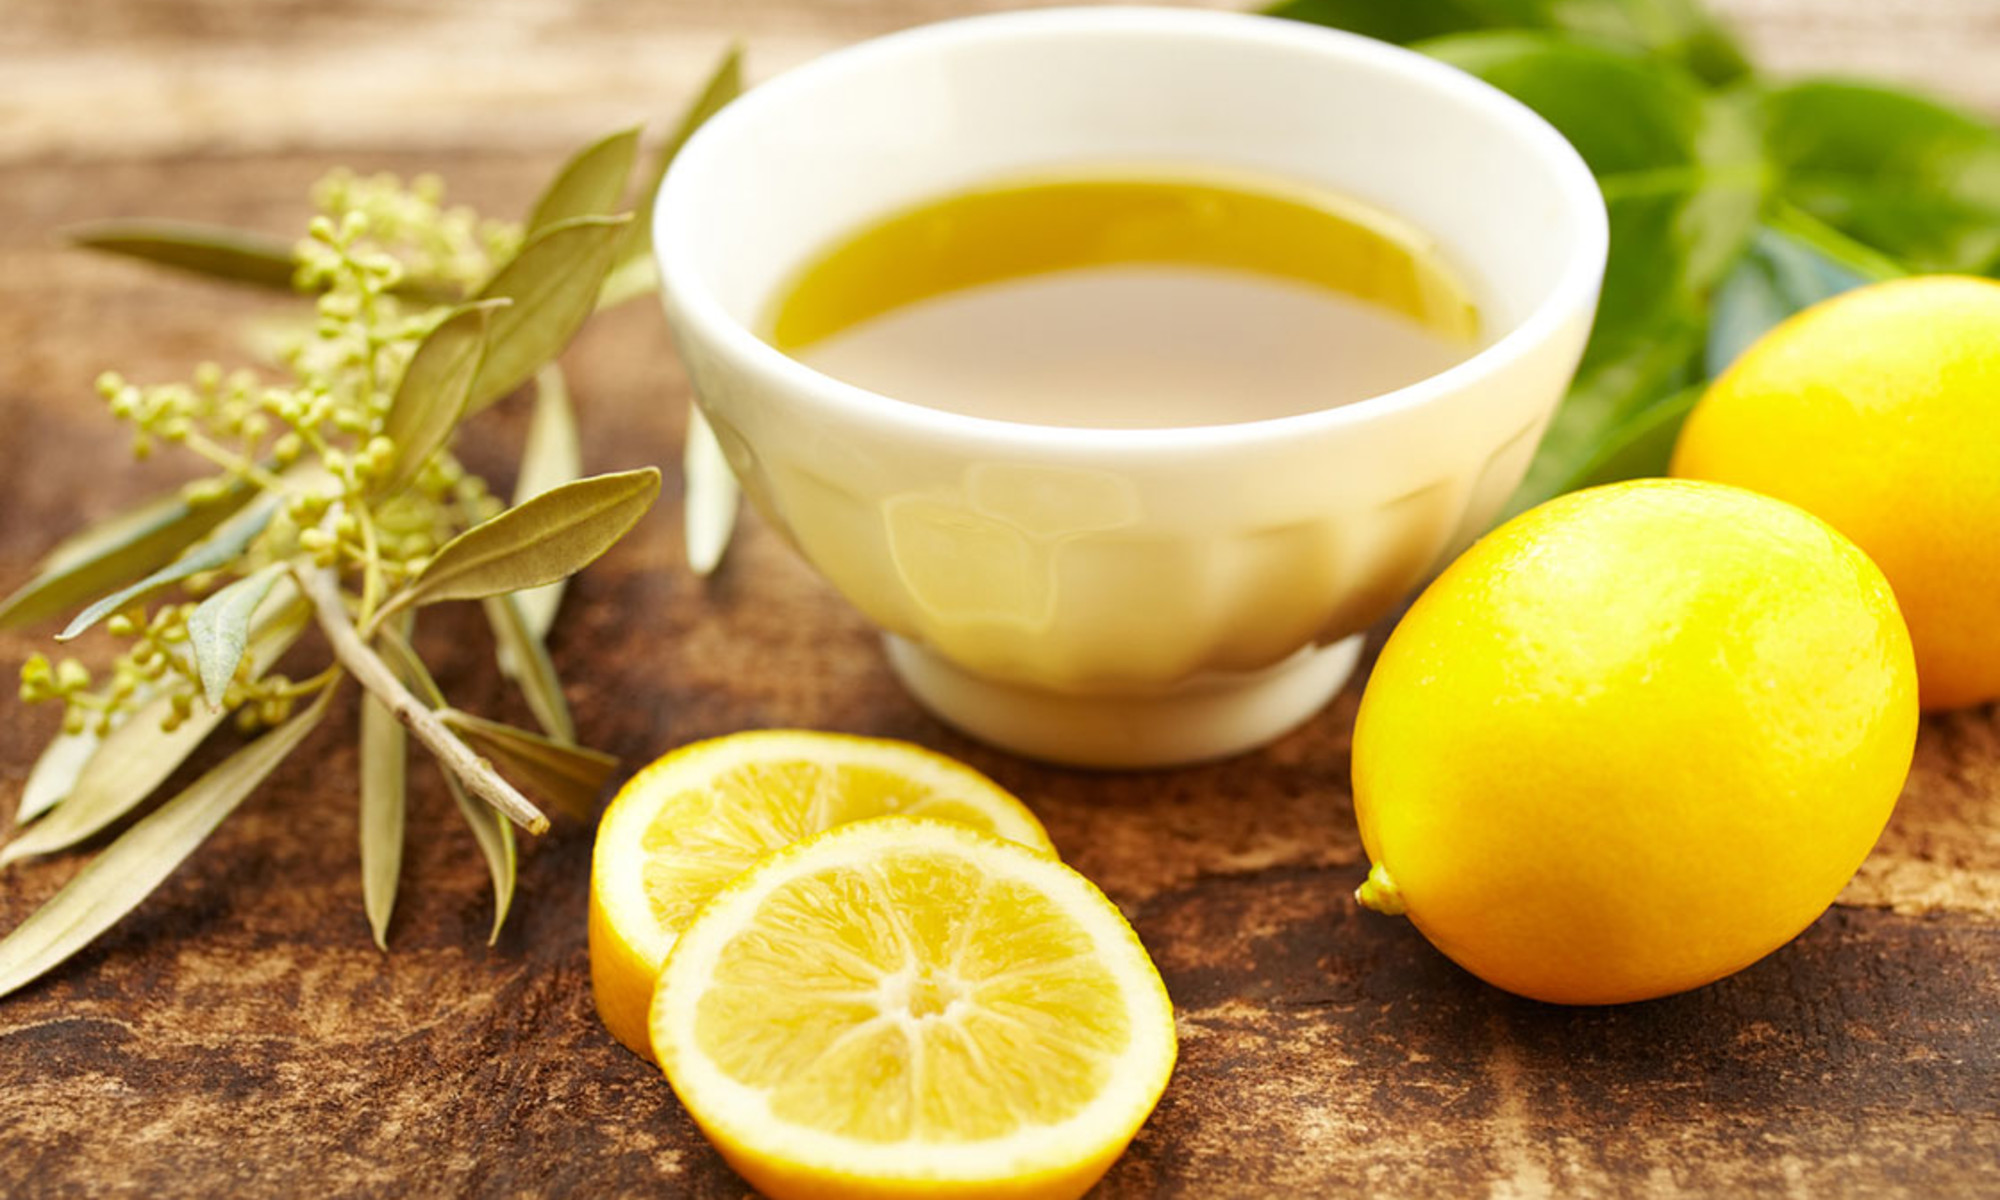 Skincare Benefits of Citrus Essential Oils